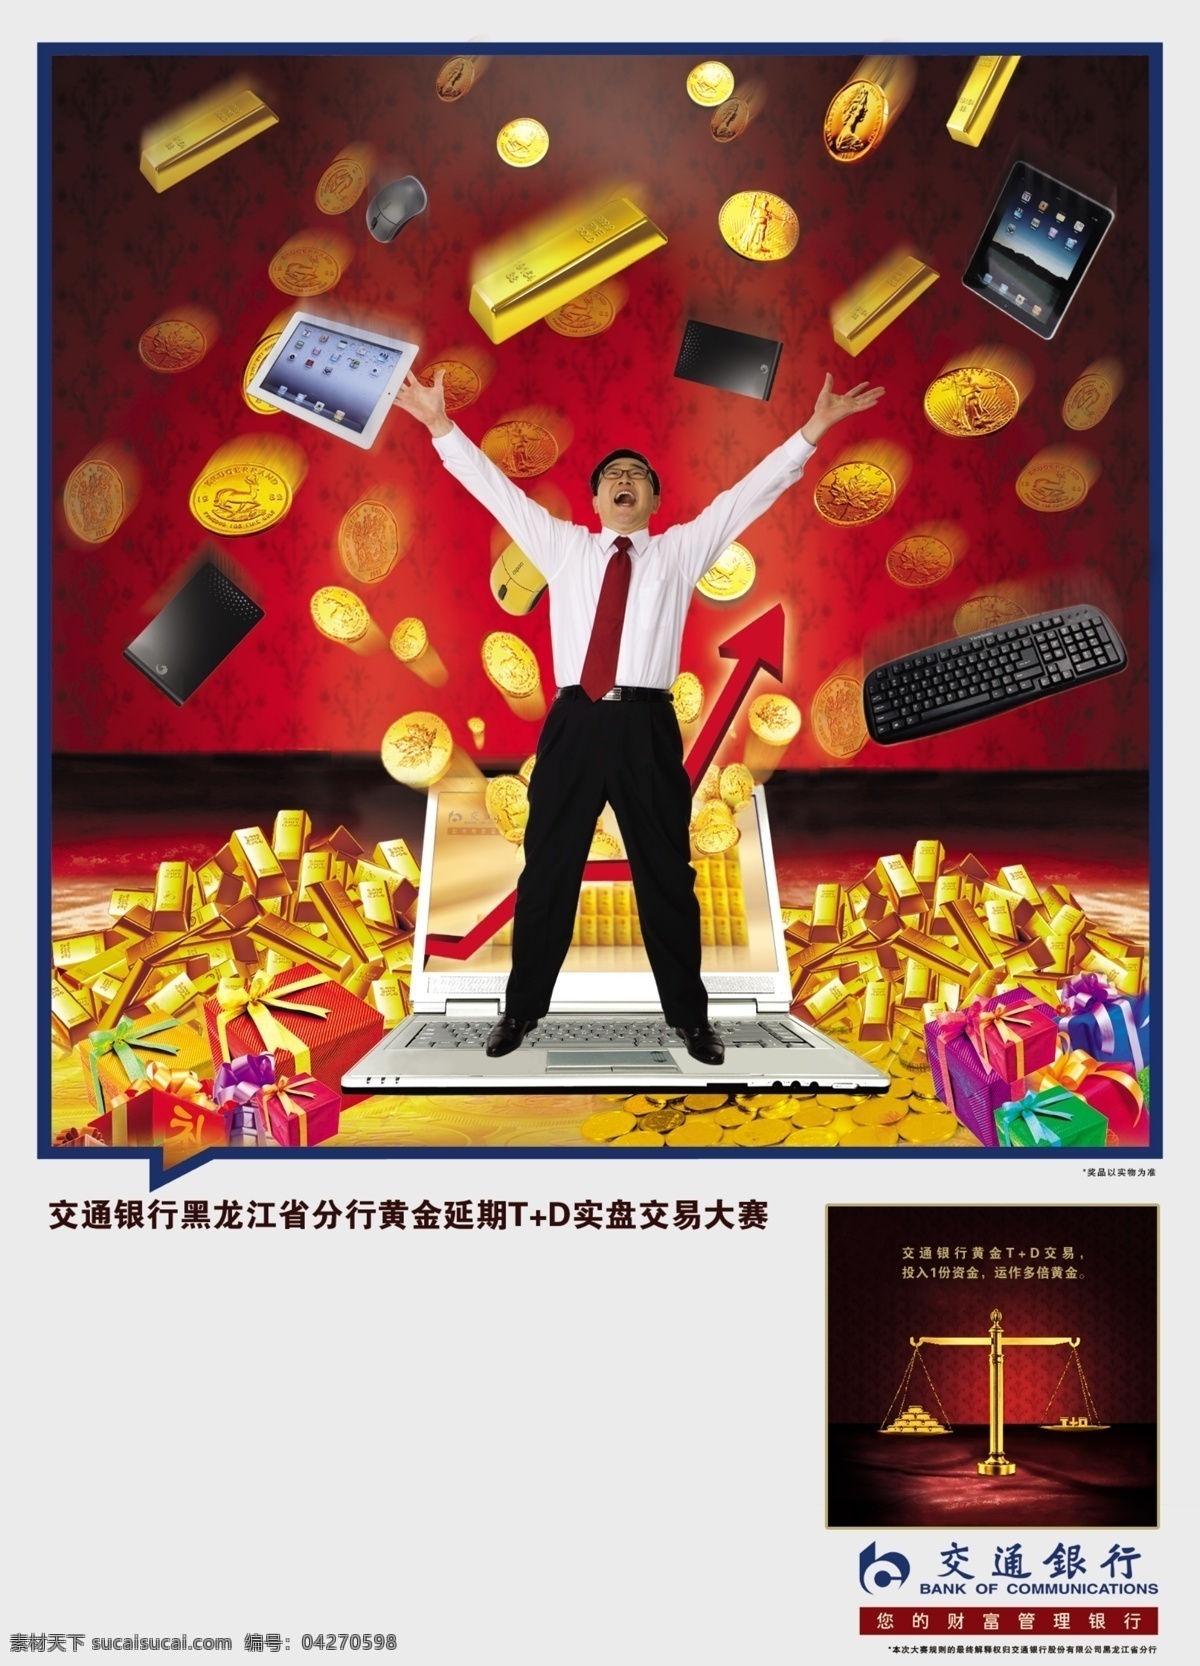 电脑 广告设计模板 键盘 交通银行 金融 金砖 礼品 钱币 鼠标 硬盘 人物 黄金天平 苹果3 源文件 其他海报设计